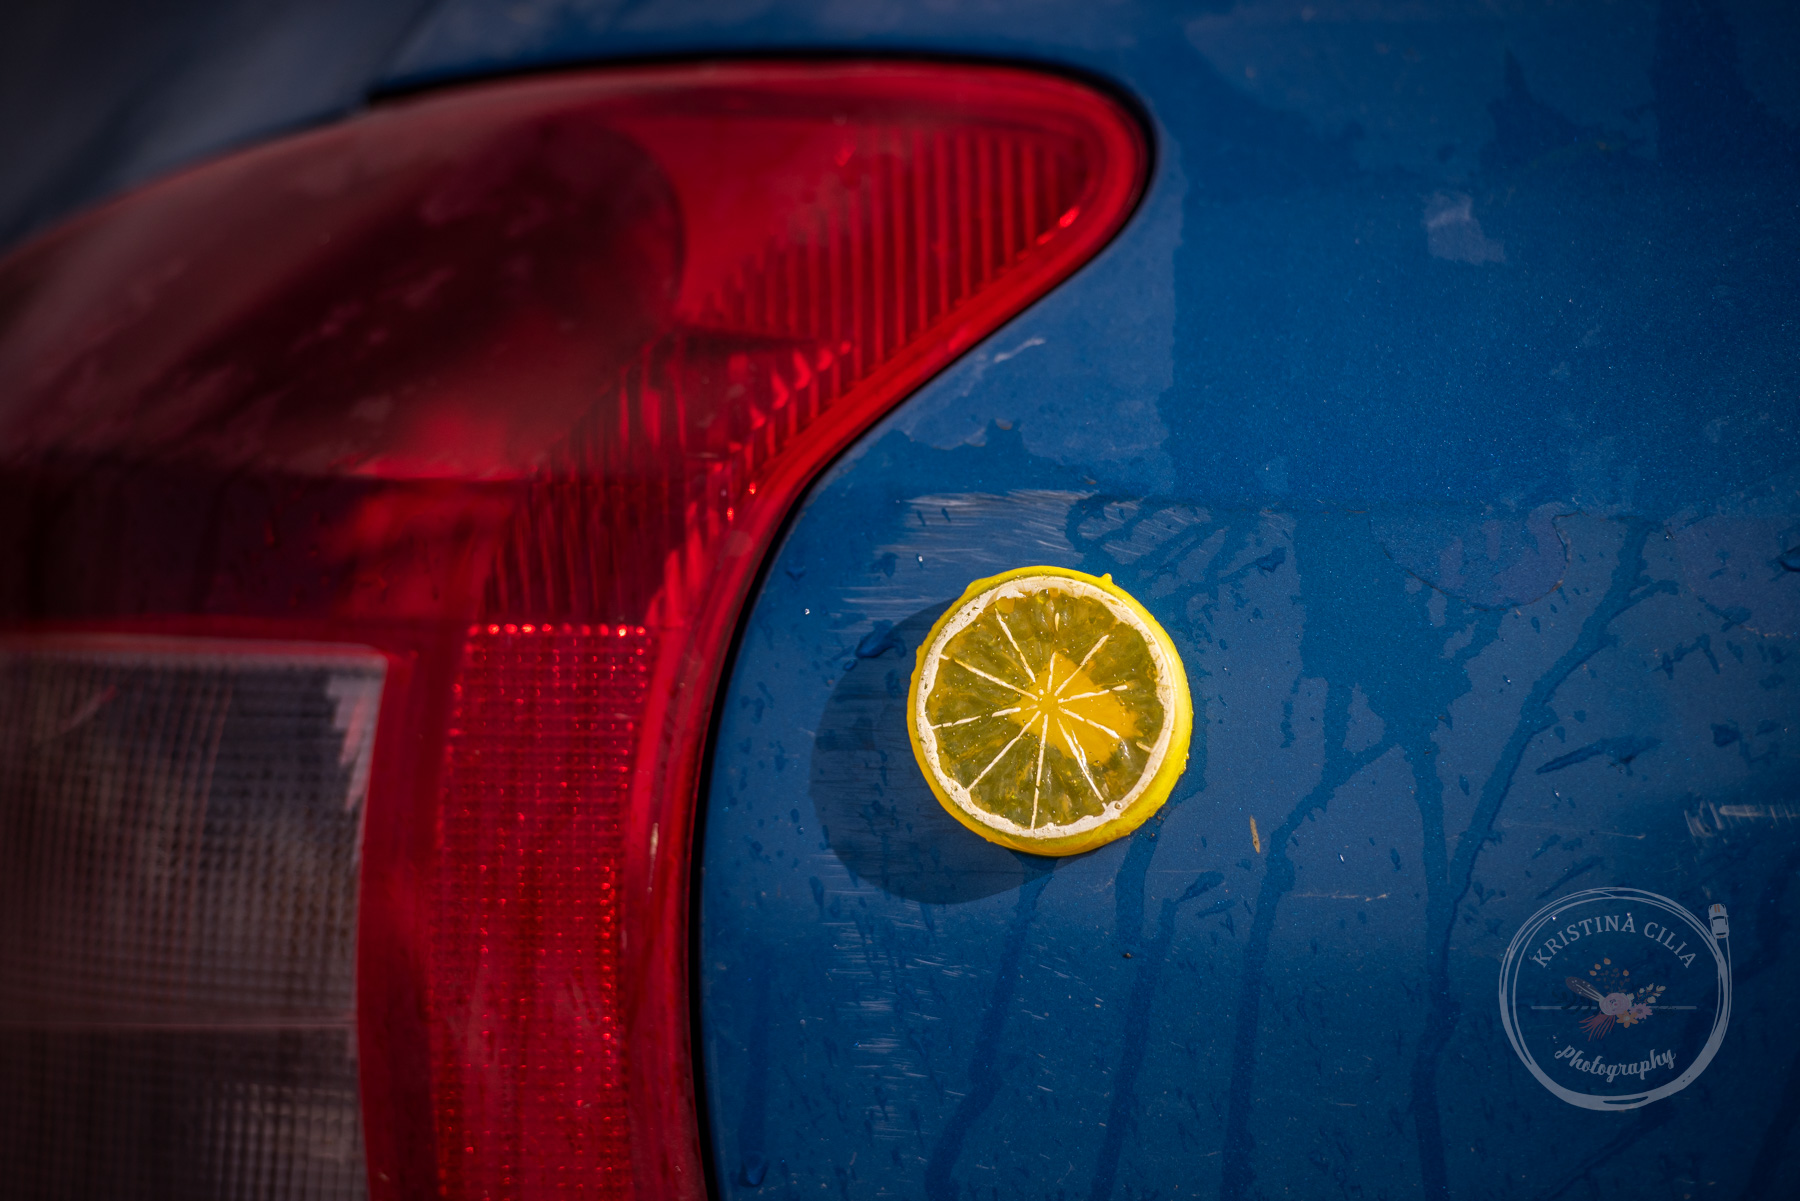 Lemons livery on a 2005 Toyota Yaris